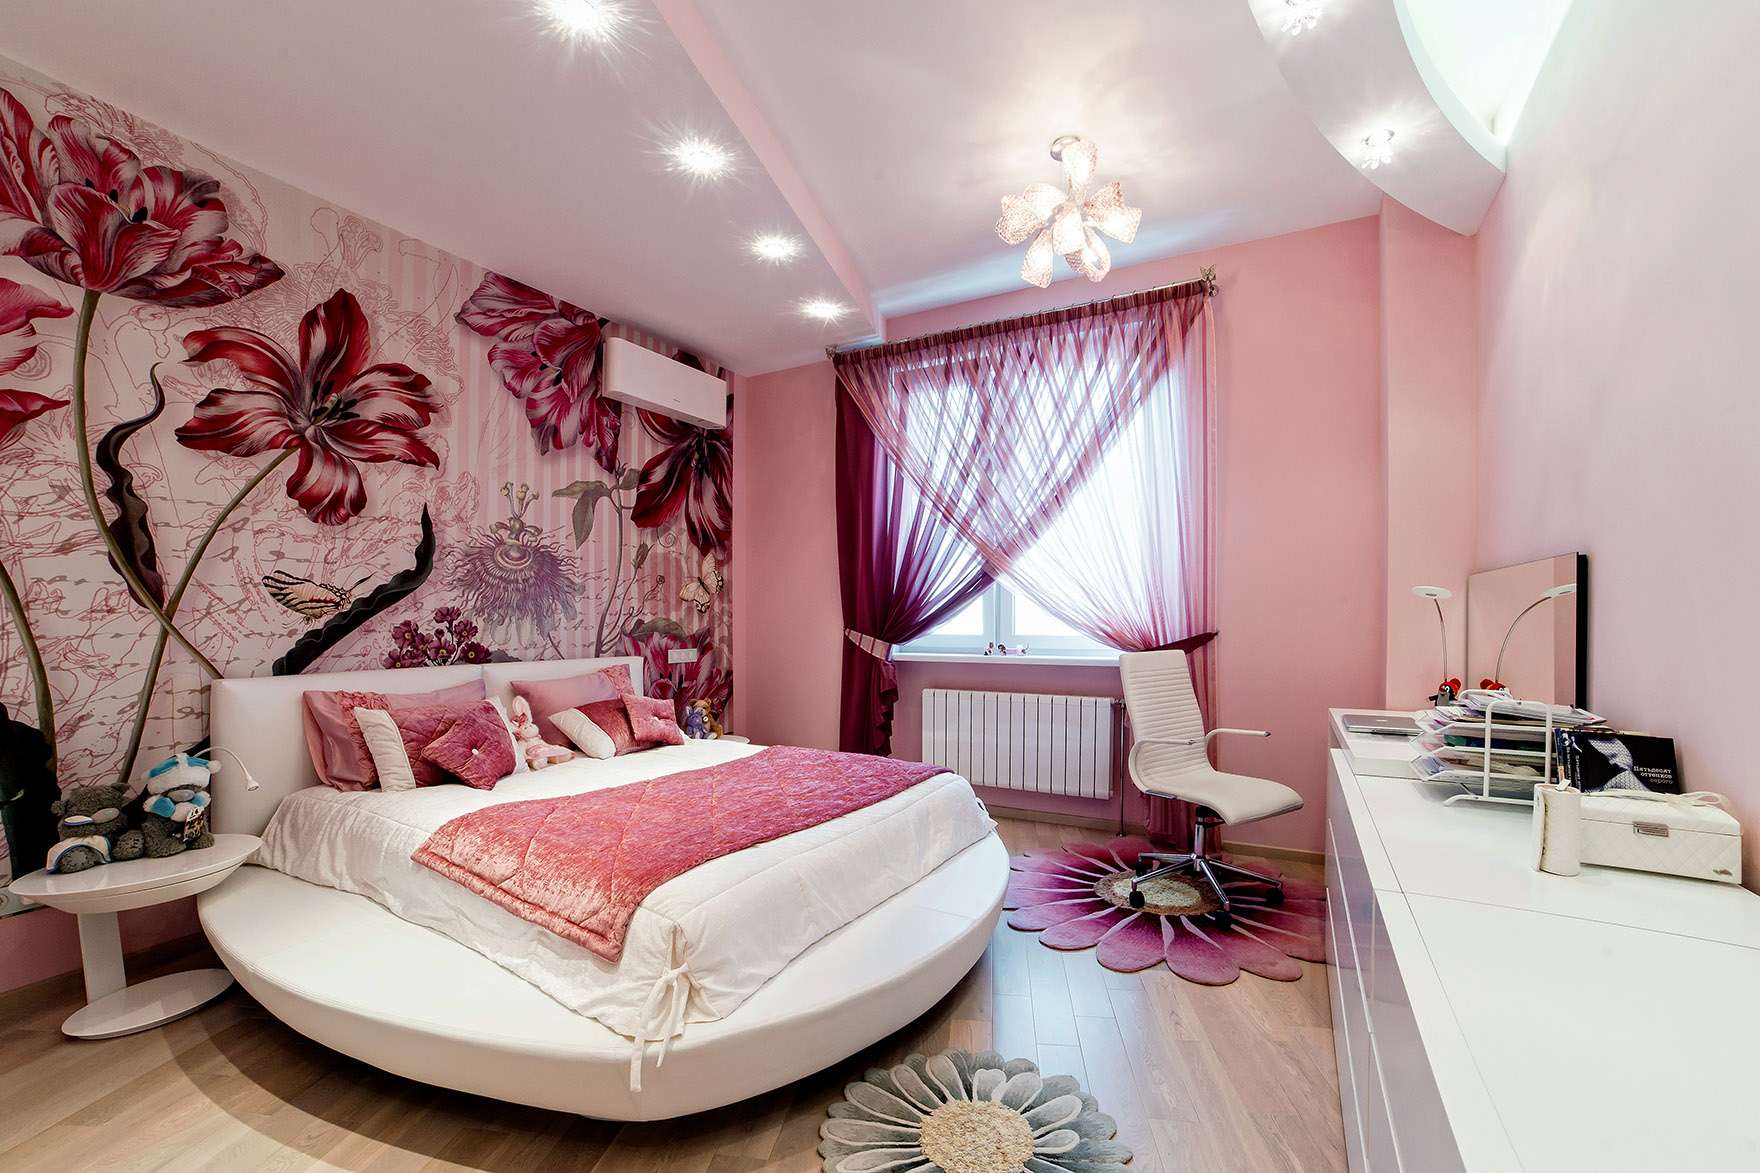 1 комнатка. Спальня для девушки. Фотообои в интерьере спальни. Спальня в розовых тонах. Спальня в розовом цвете.